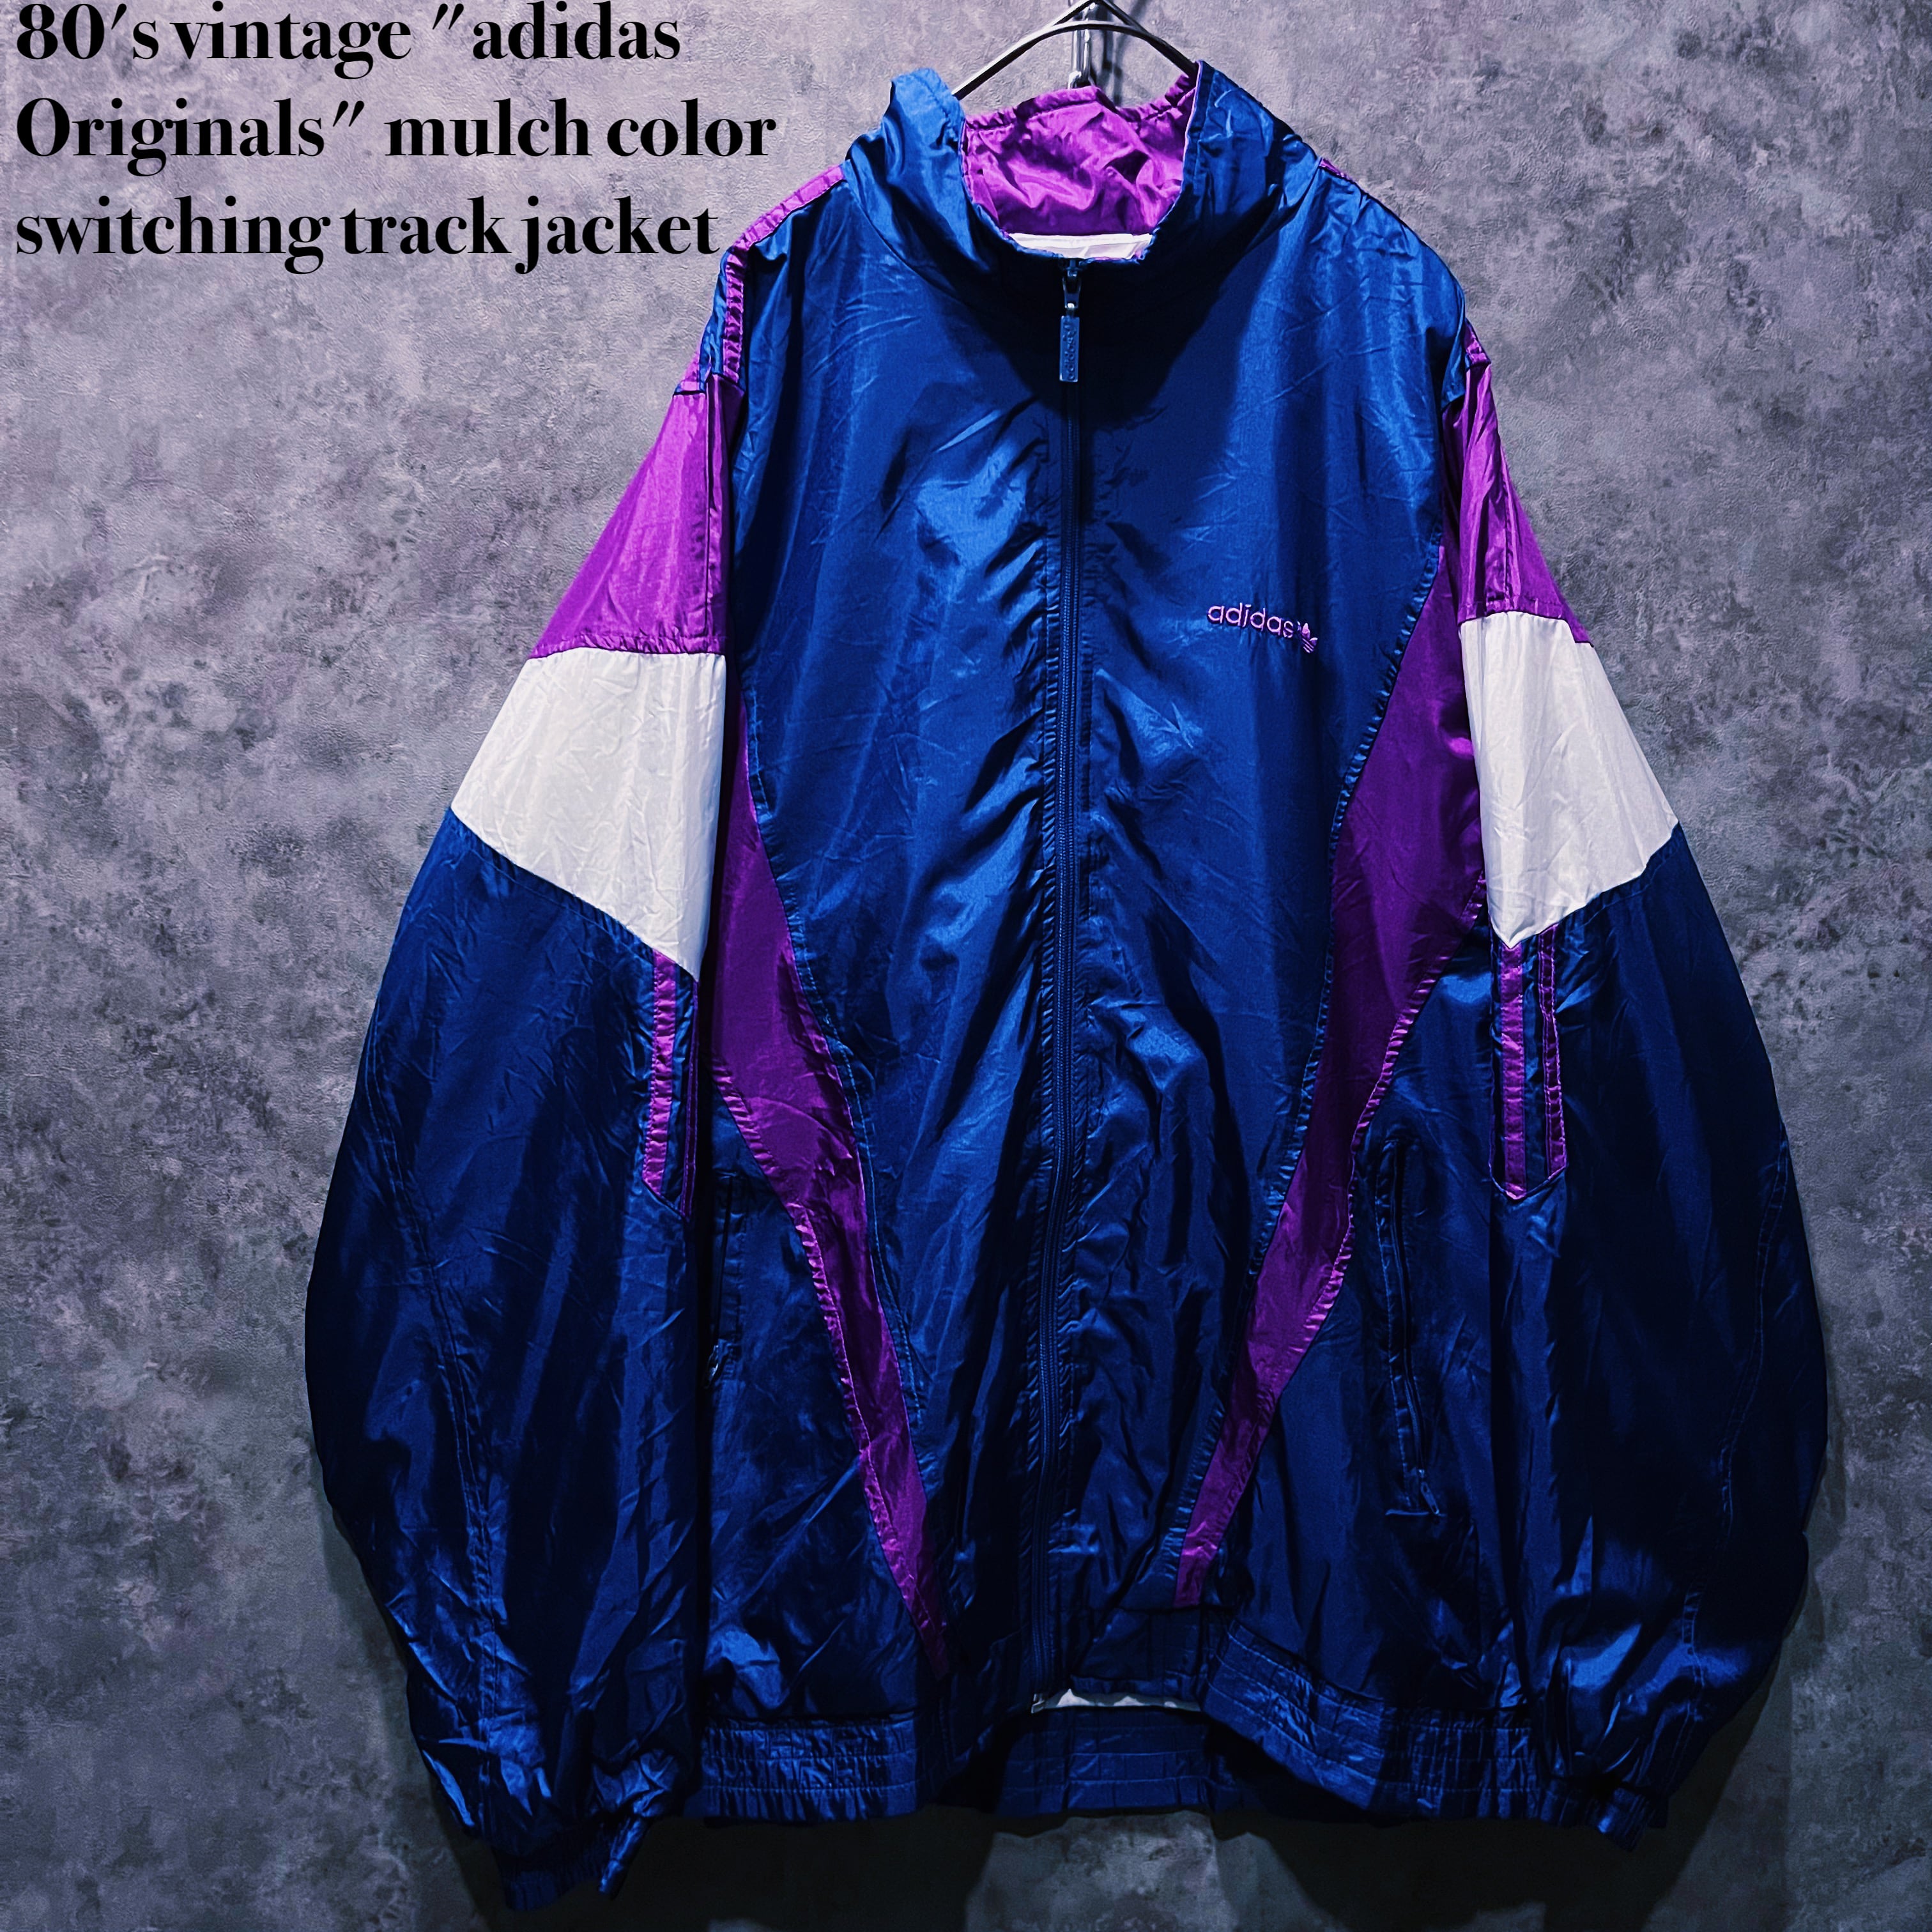 doppio】80's vintage Originals" mulch color switching jacket |